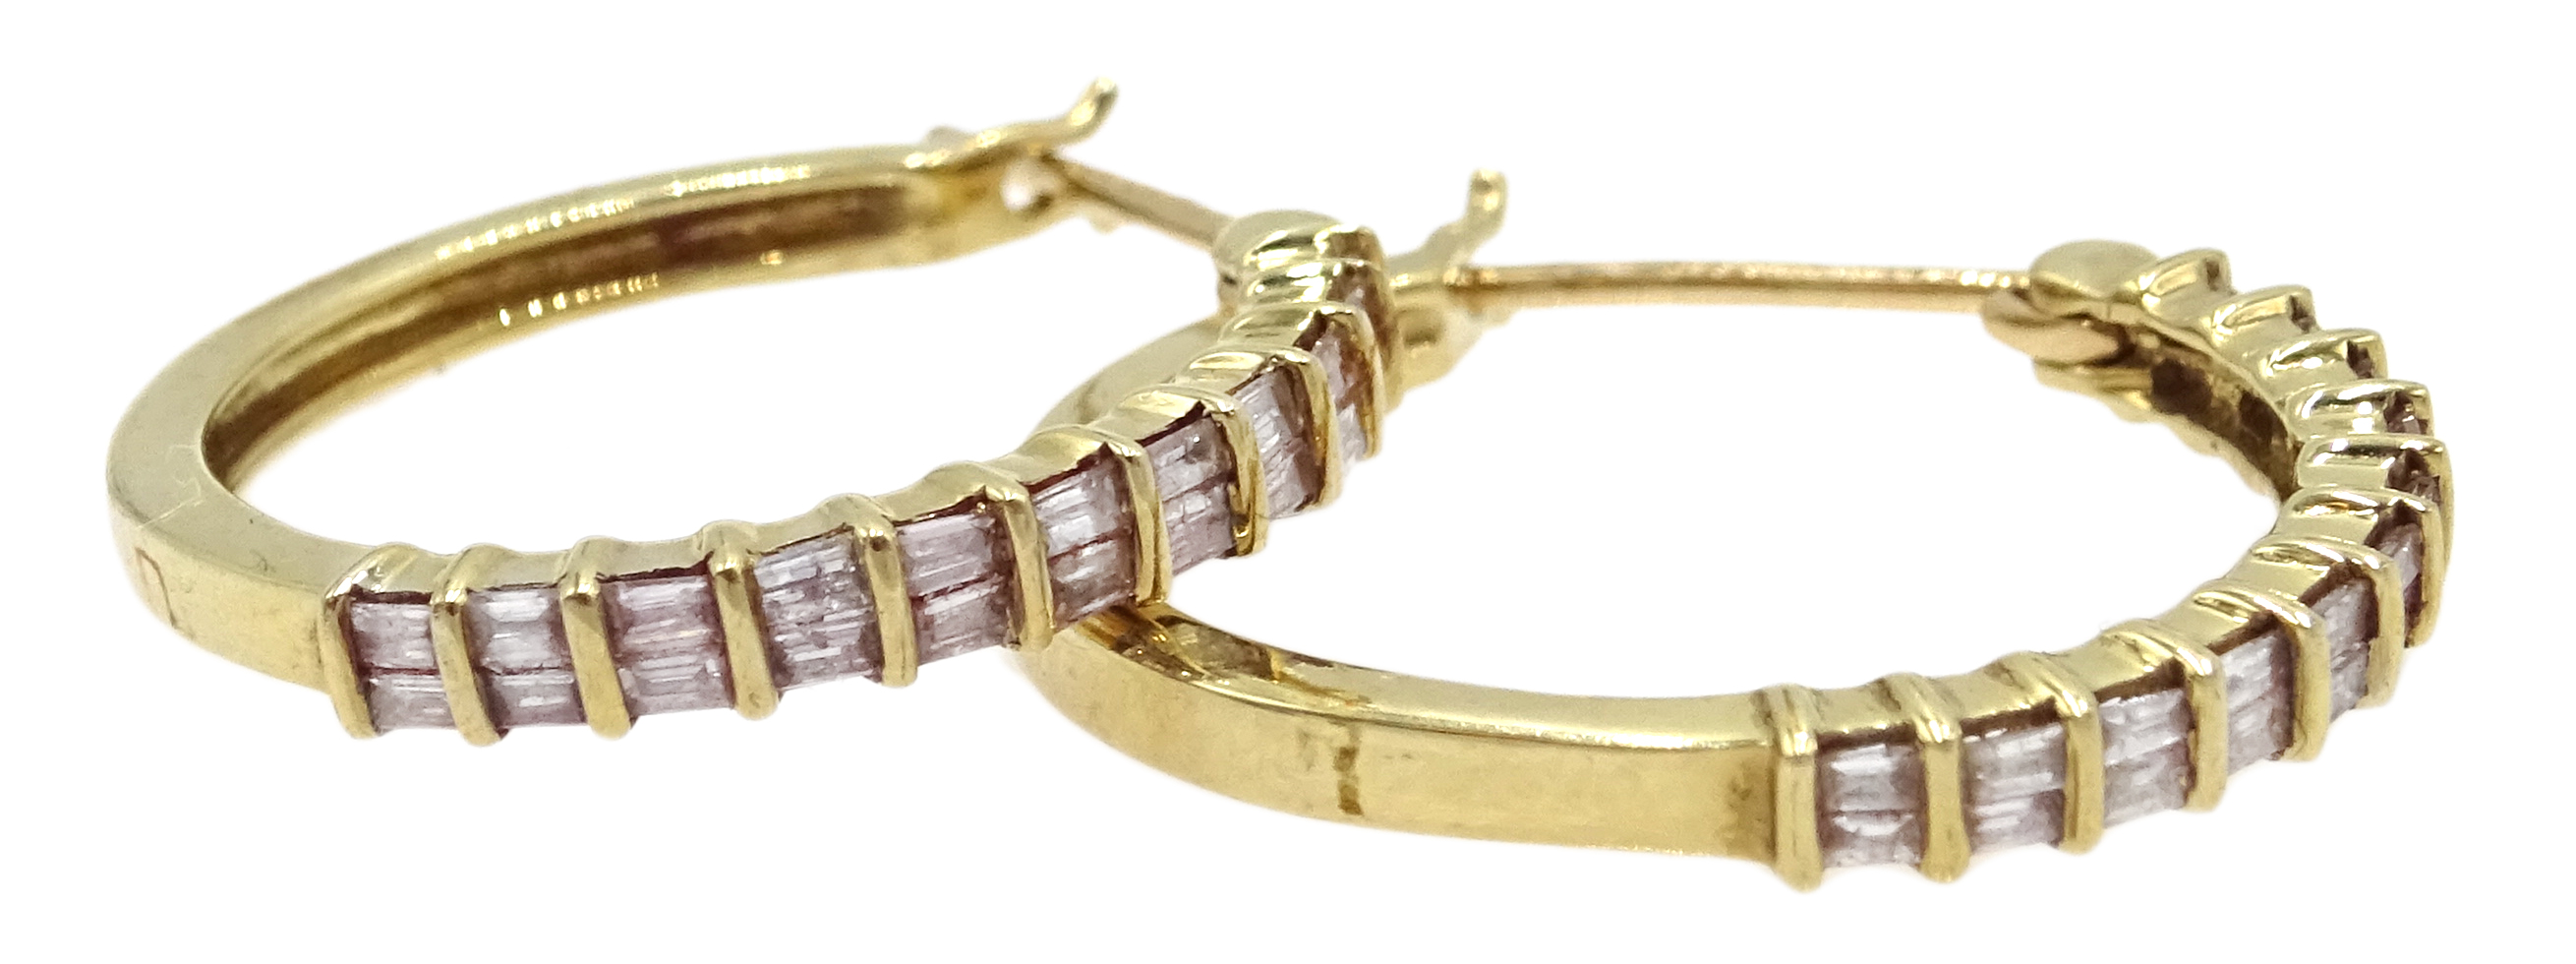 Pair of 9ct gold diamond set hoop earrings, - Image 3 of 3